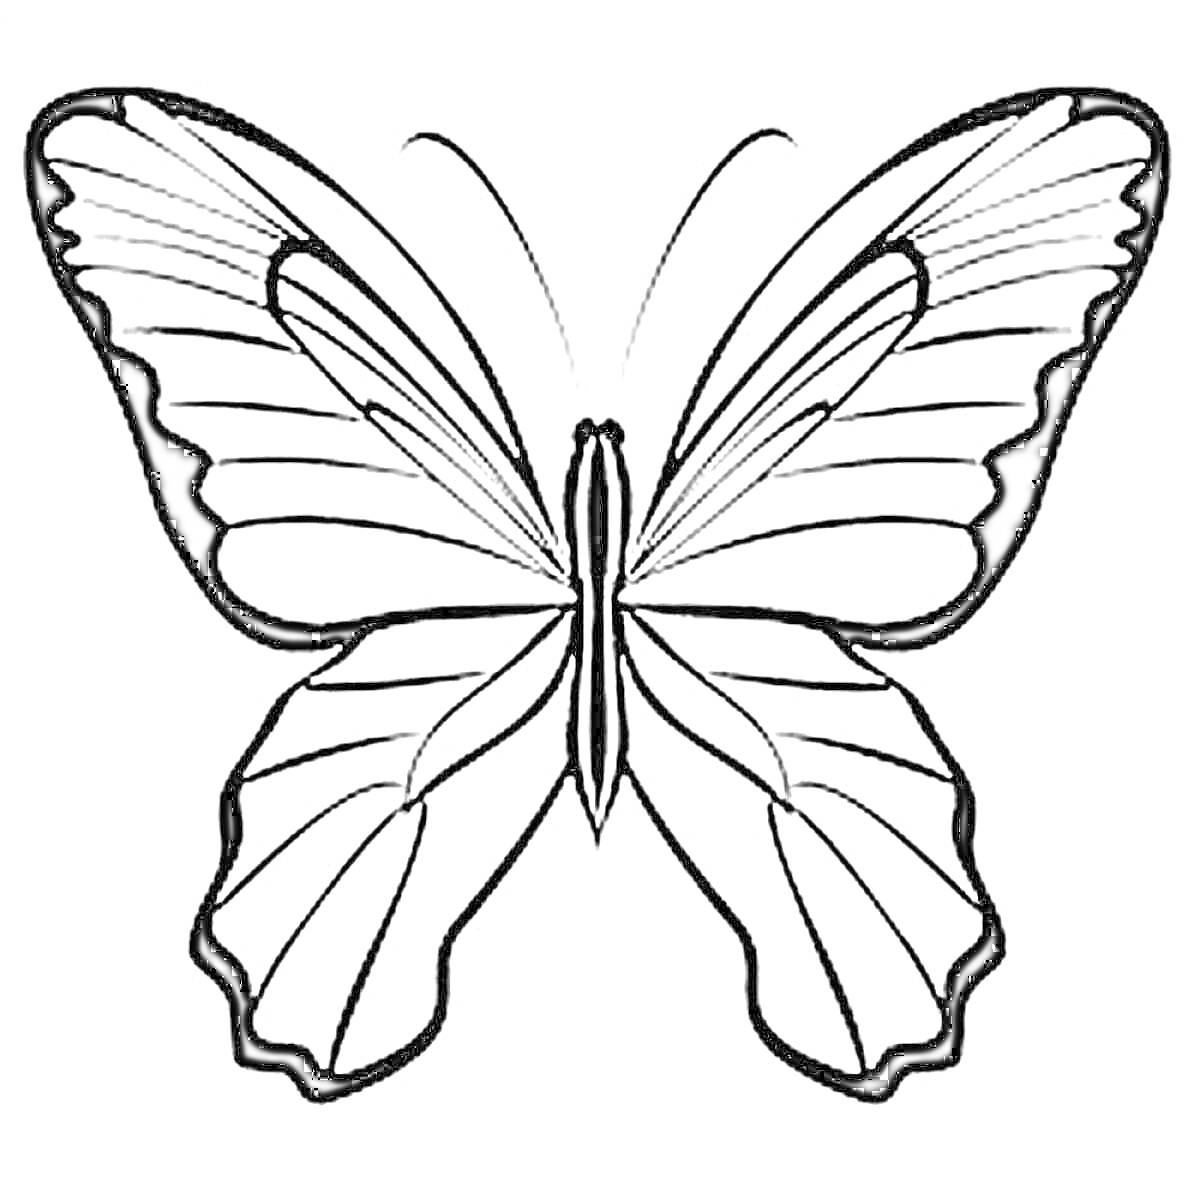 Раскраска шаблон бабочки с развернутыми крыльями